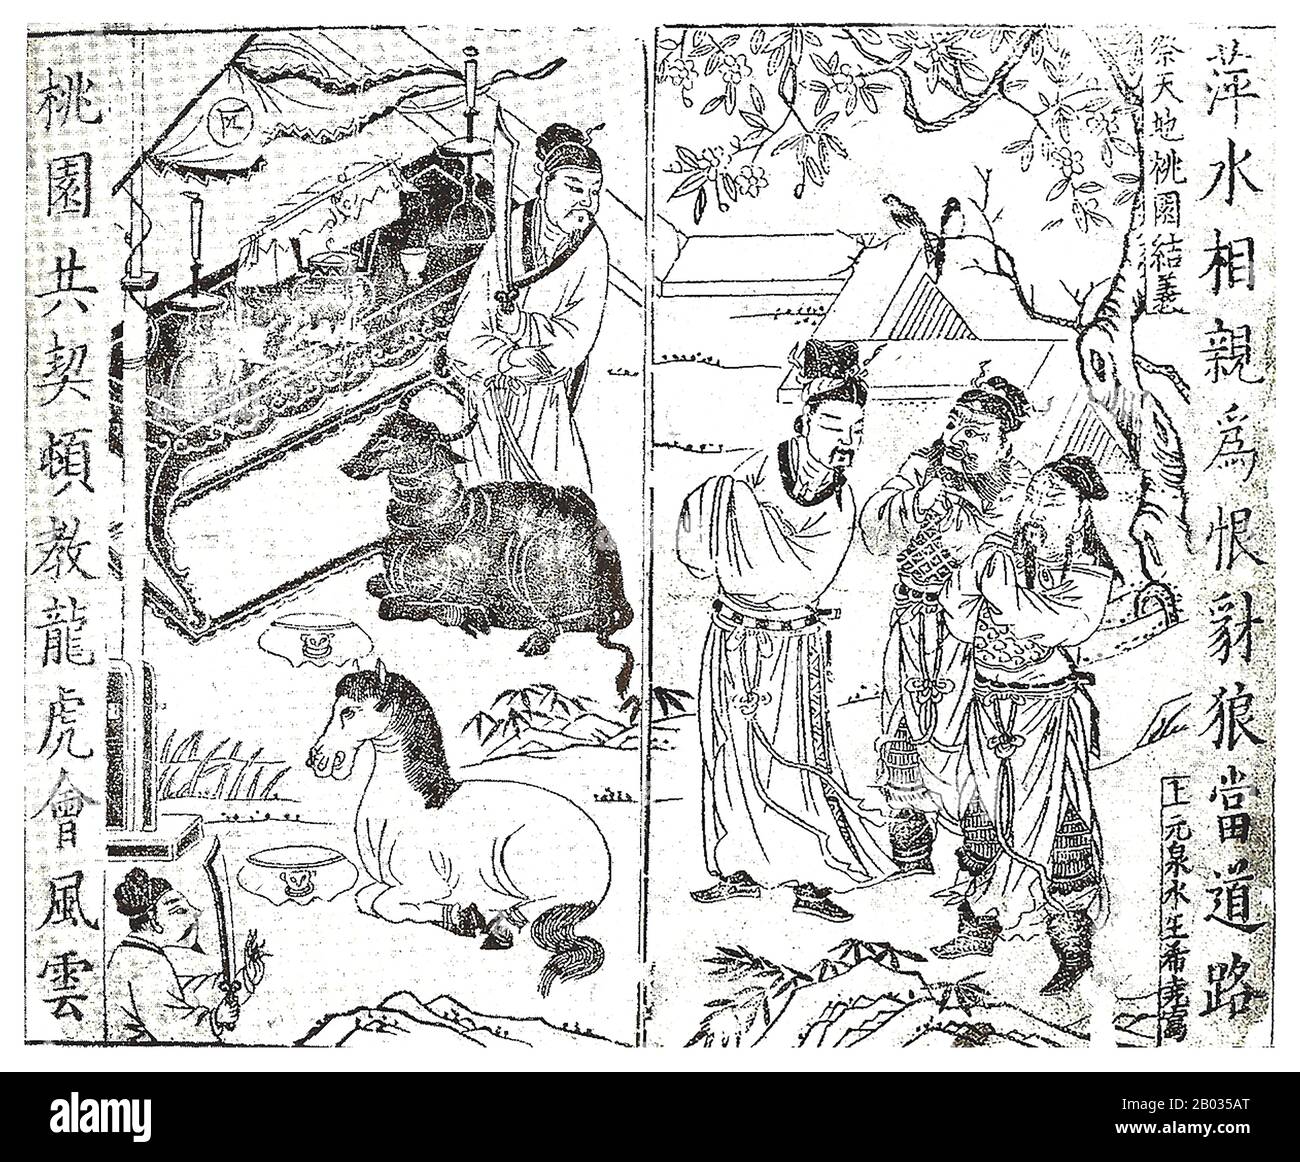 Ein fiktives Ereignis im historischen Roman "Romance of the Three Kingdoms", der Eid des Peach Garden, war ein Ereignis, das sich irgendwann in den 180er Jahren CE ereignete, bei dem Liu bei, Guan Yu und Zhang Fei in einem Pfirsichgarten einen Bruderschaftseid miteinander schwor (Vermutlich im heutigen Zhuozhou, Hebei). Sie wurden vereidigte Brüder, die sie in Hingabe und Loyalität zusammenbinden. Es ist ein wichtiges Ereignis, das den Weg für die Gründung der Shu Han ebnete, wobei alle drei Männer während der Zeit Der Drei Reiche bedeutende Rollen spielten. Stockfoto